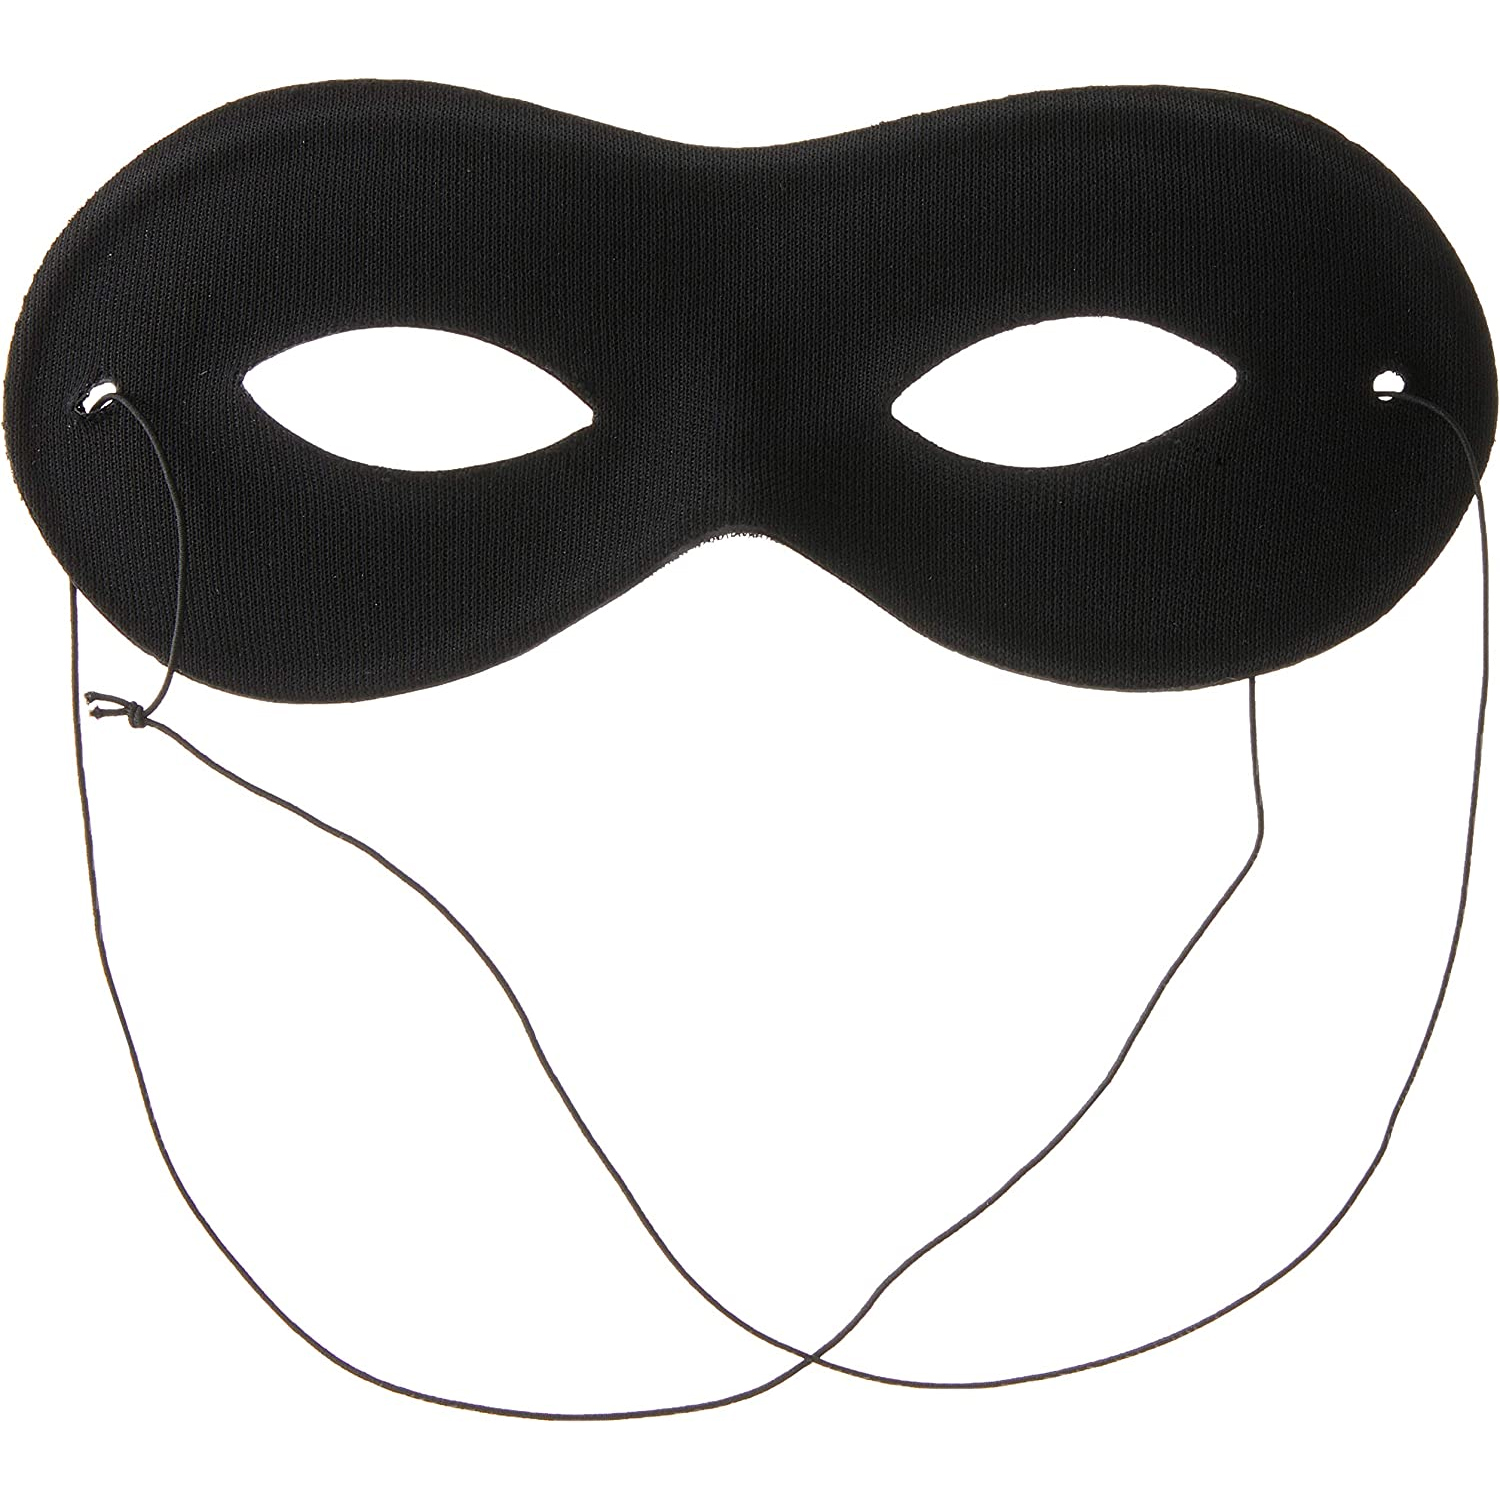 NEU Qualitäts-Maske Stoffbrille Augenmaske, Schwarz, 1 Stück